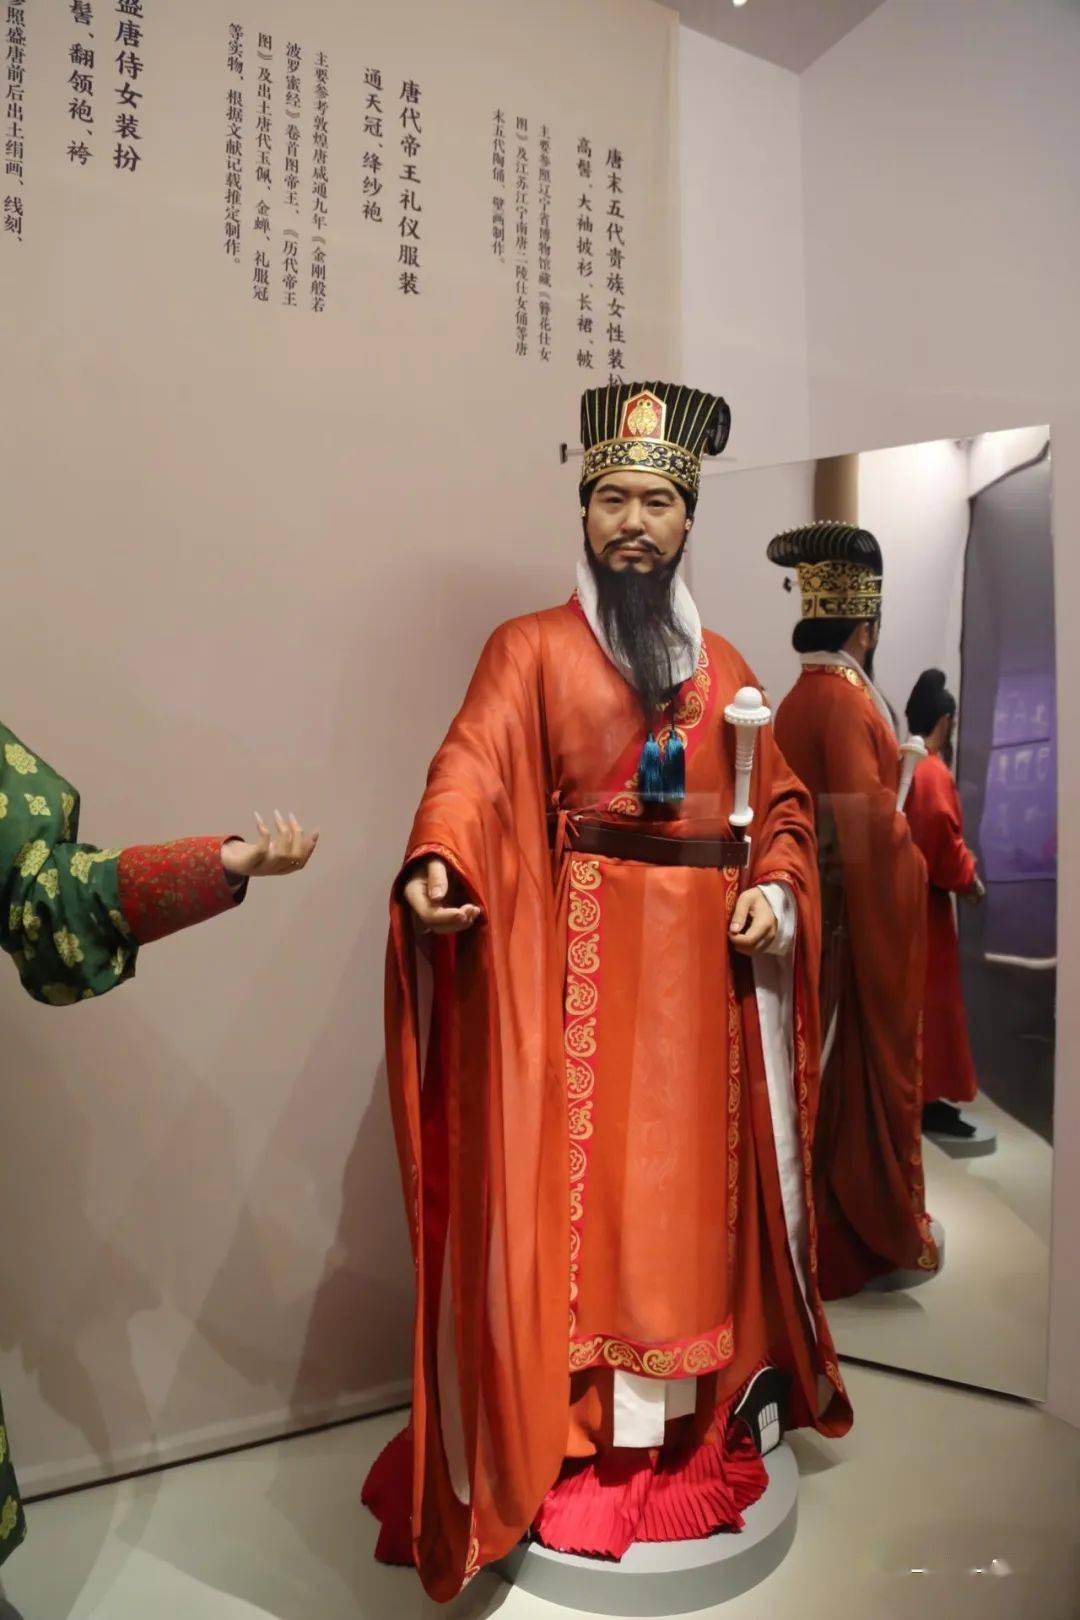 中国冠帽文化博物馆图片